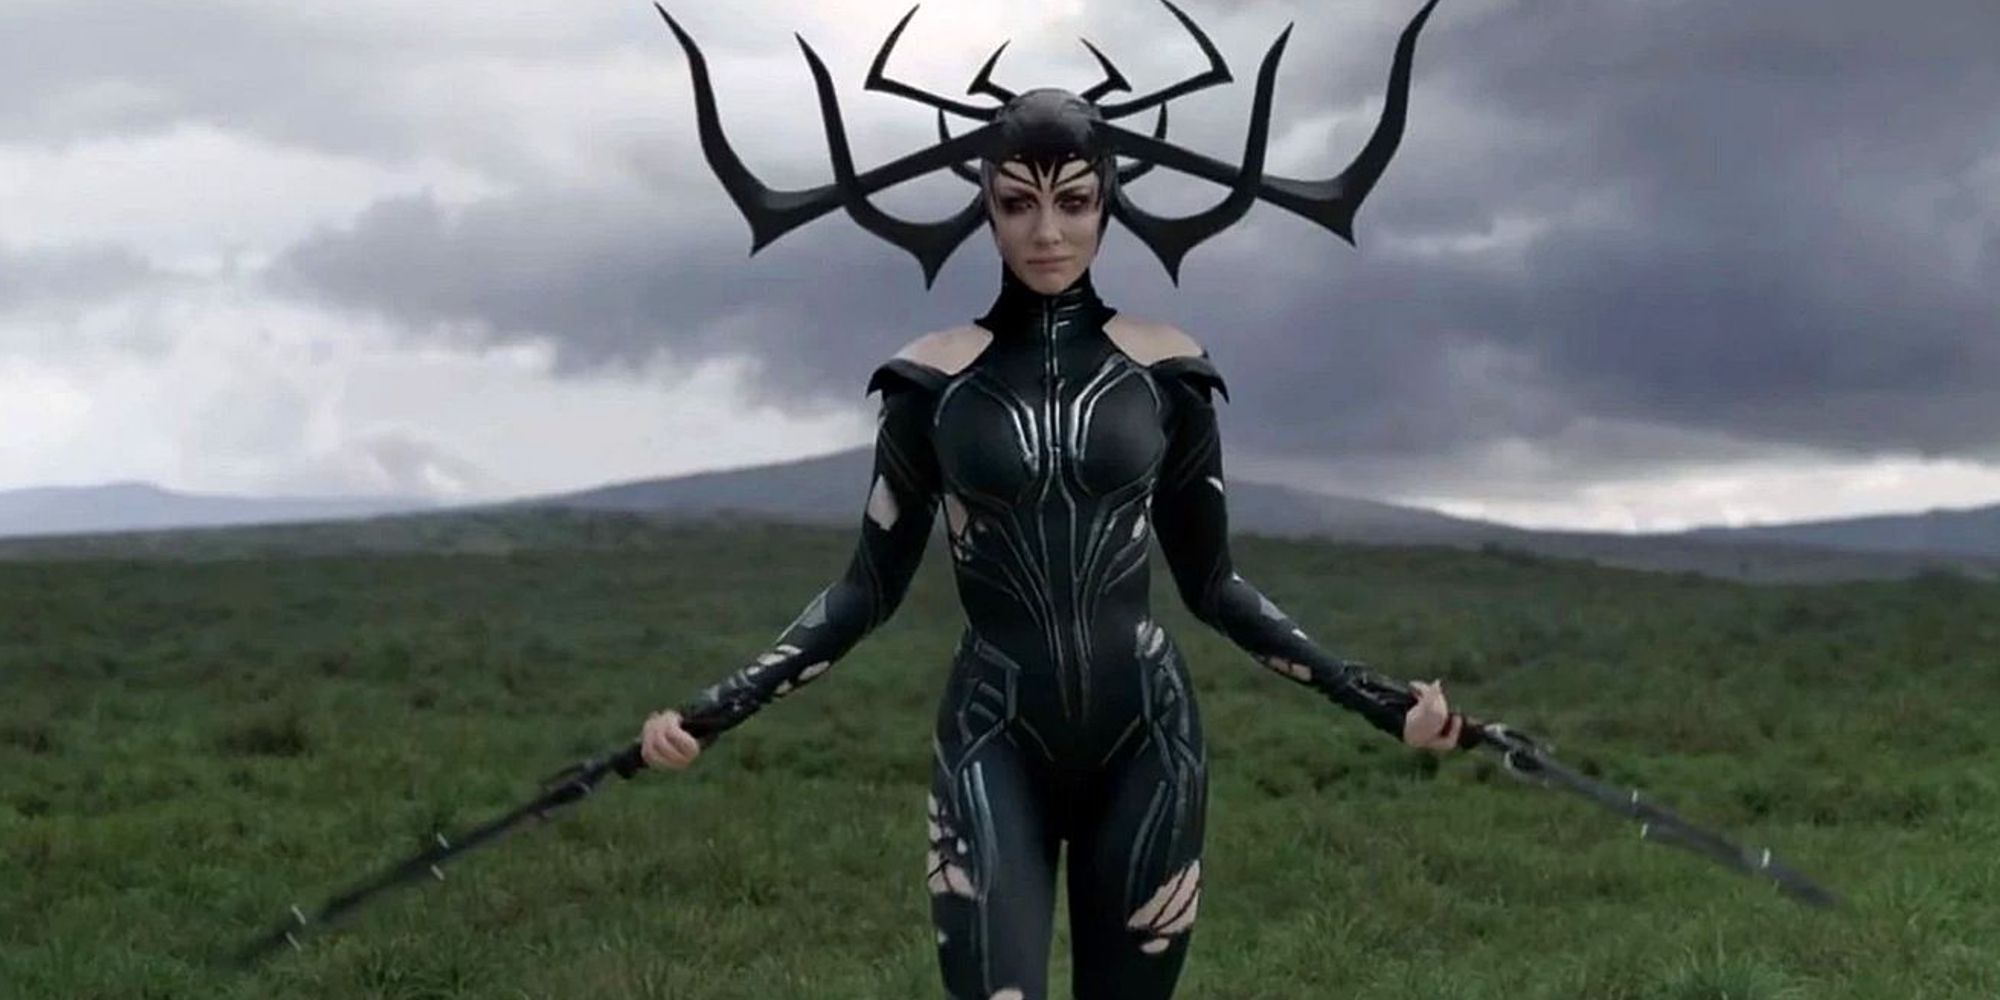 Hela brandishing two swords in a field in Thor: Ragnarok